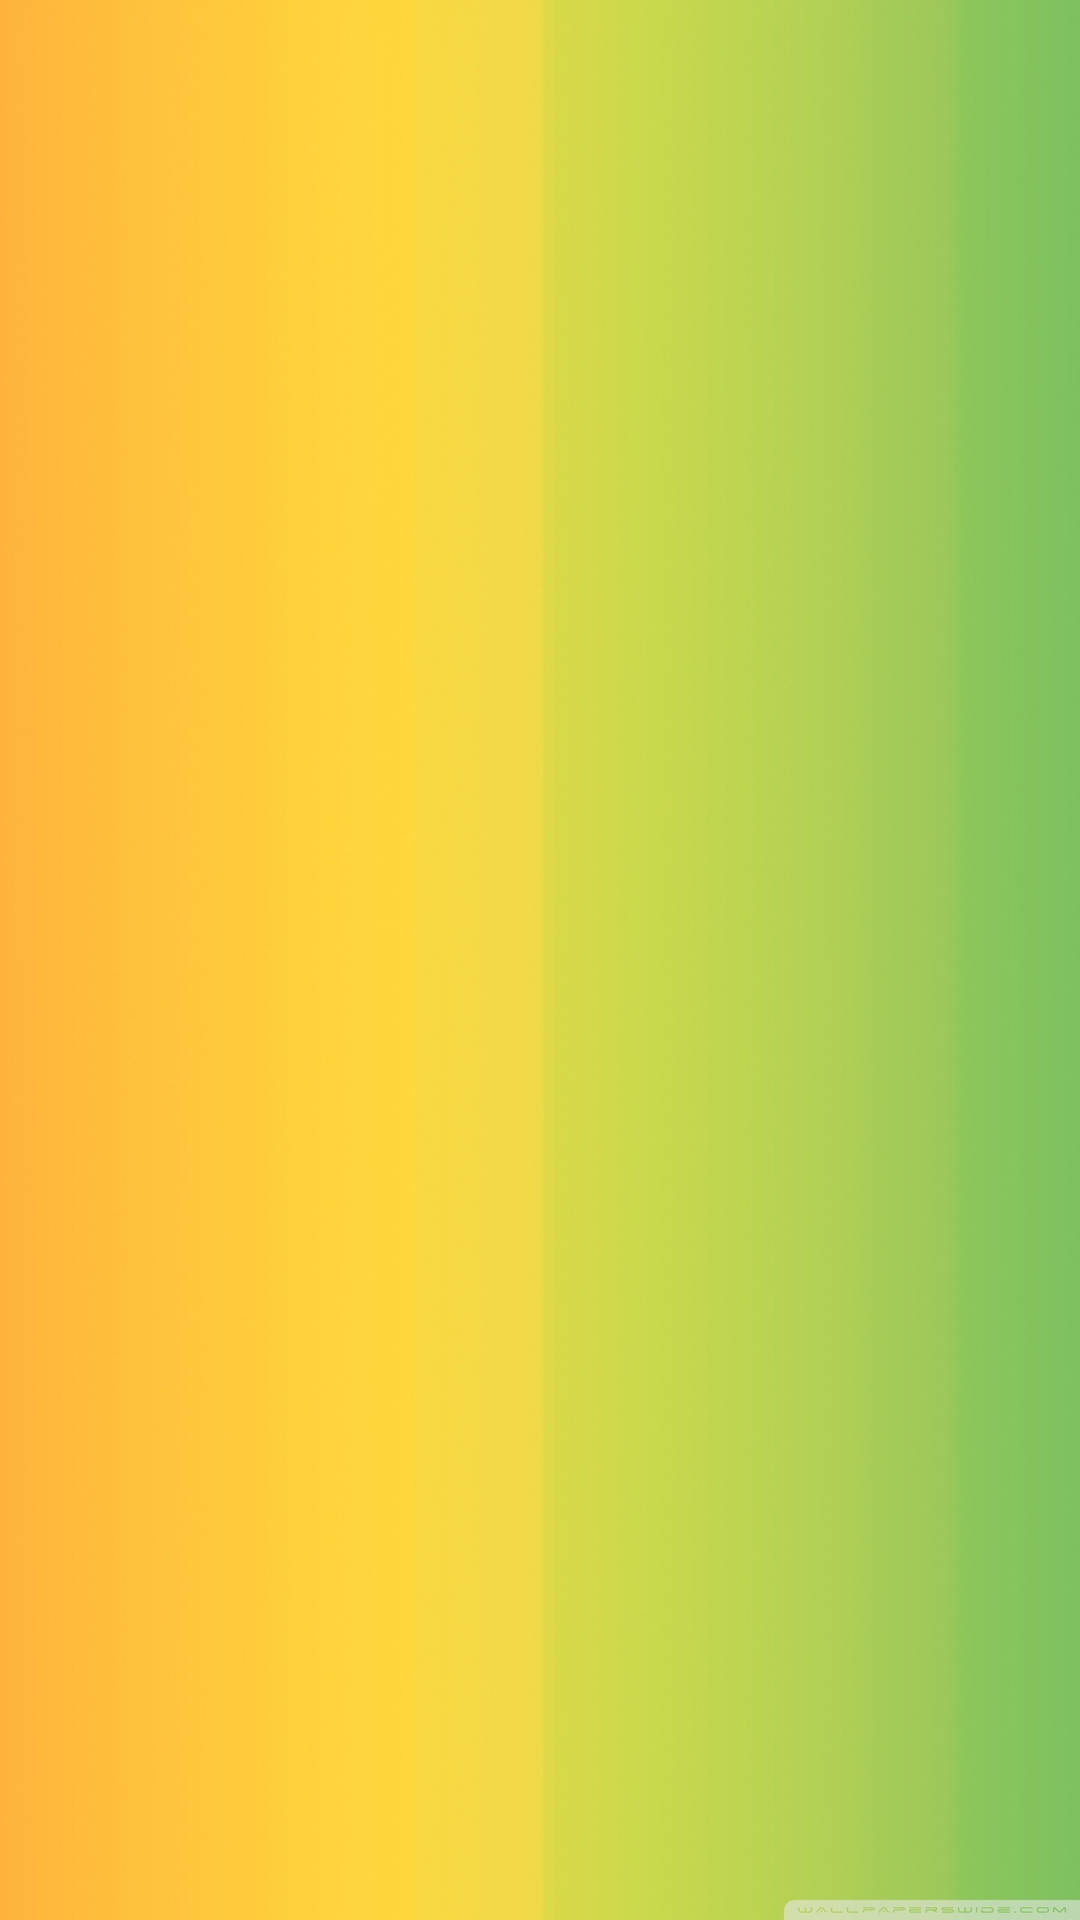 Smart Vertical Yellow Green Gradient Background